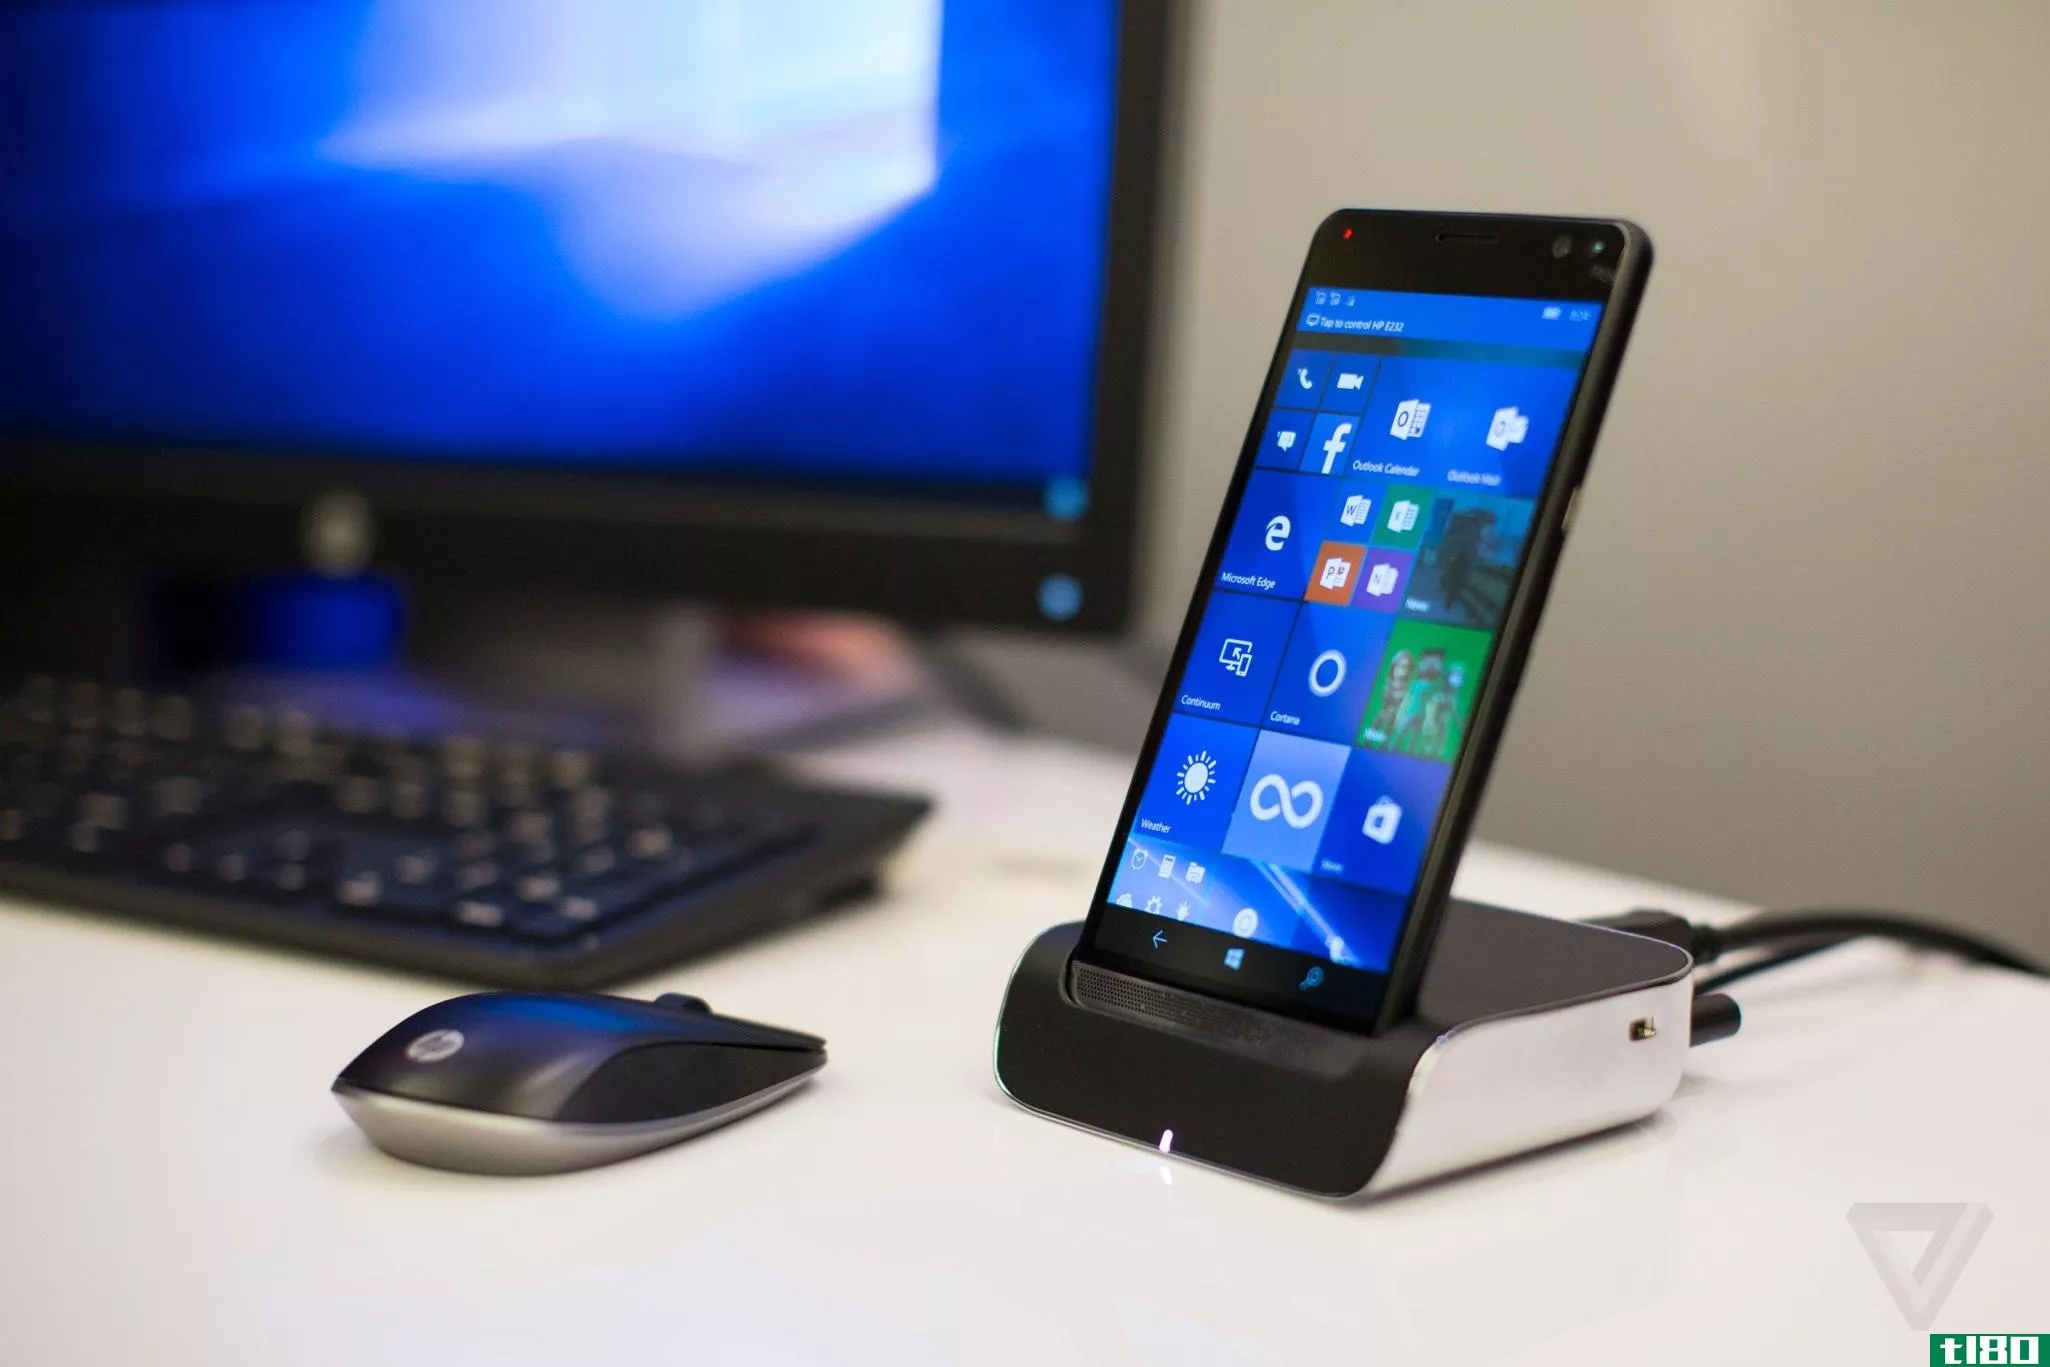 微软商店现在正在销售惠普的精英x3windows手机